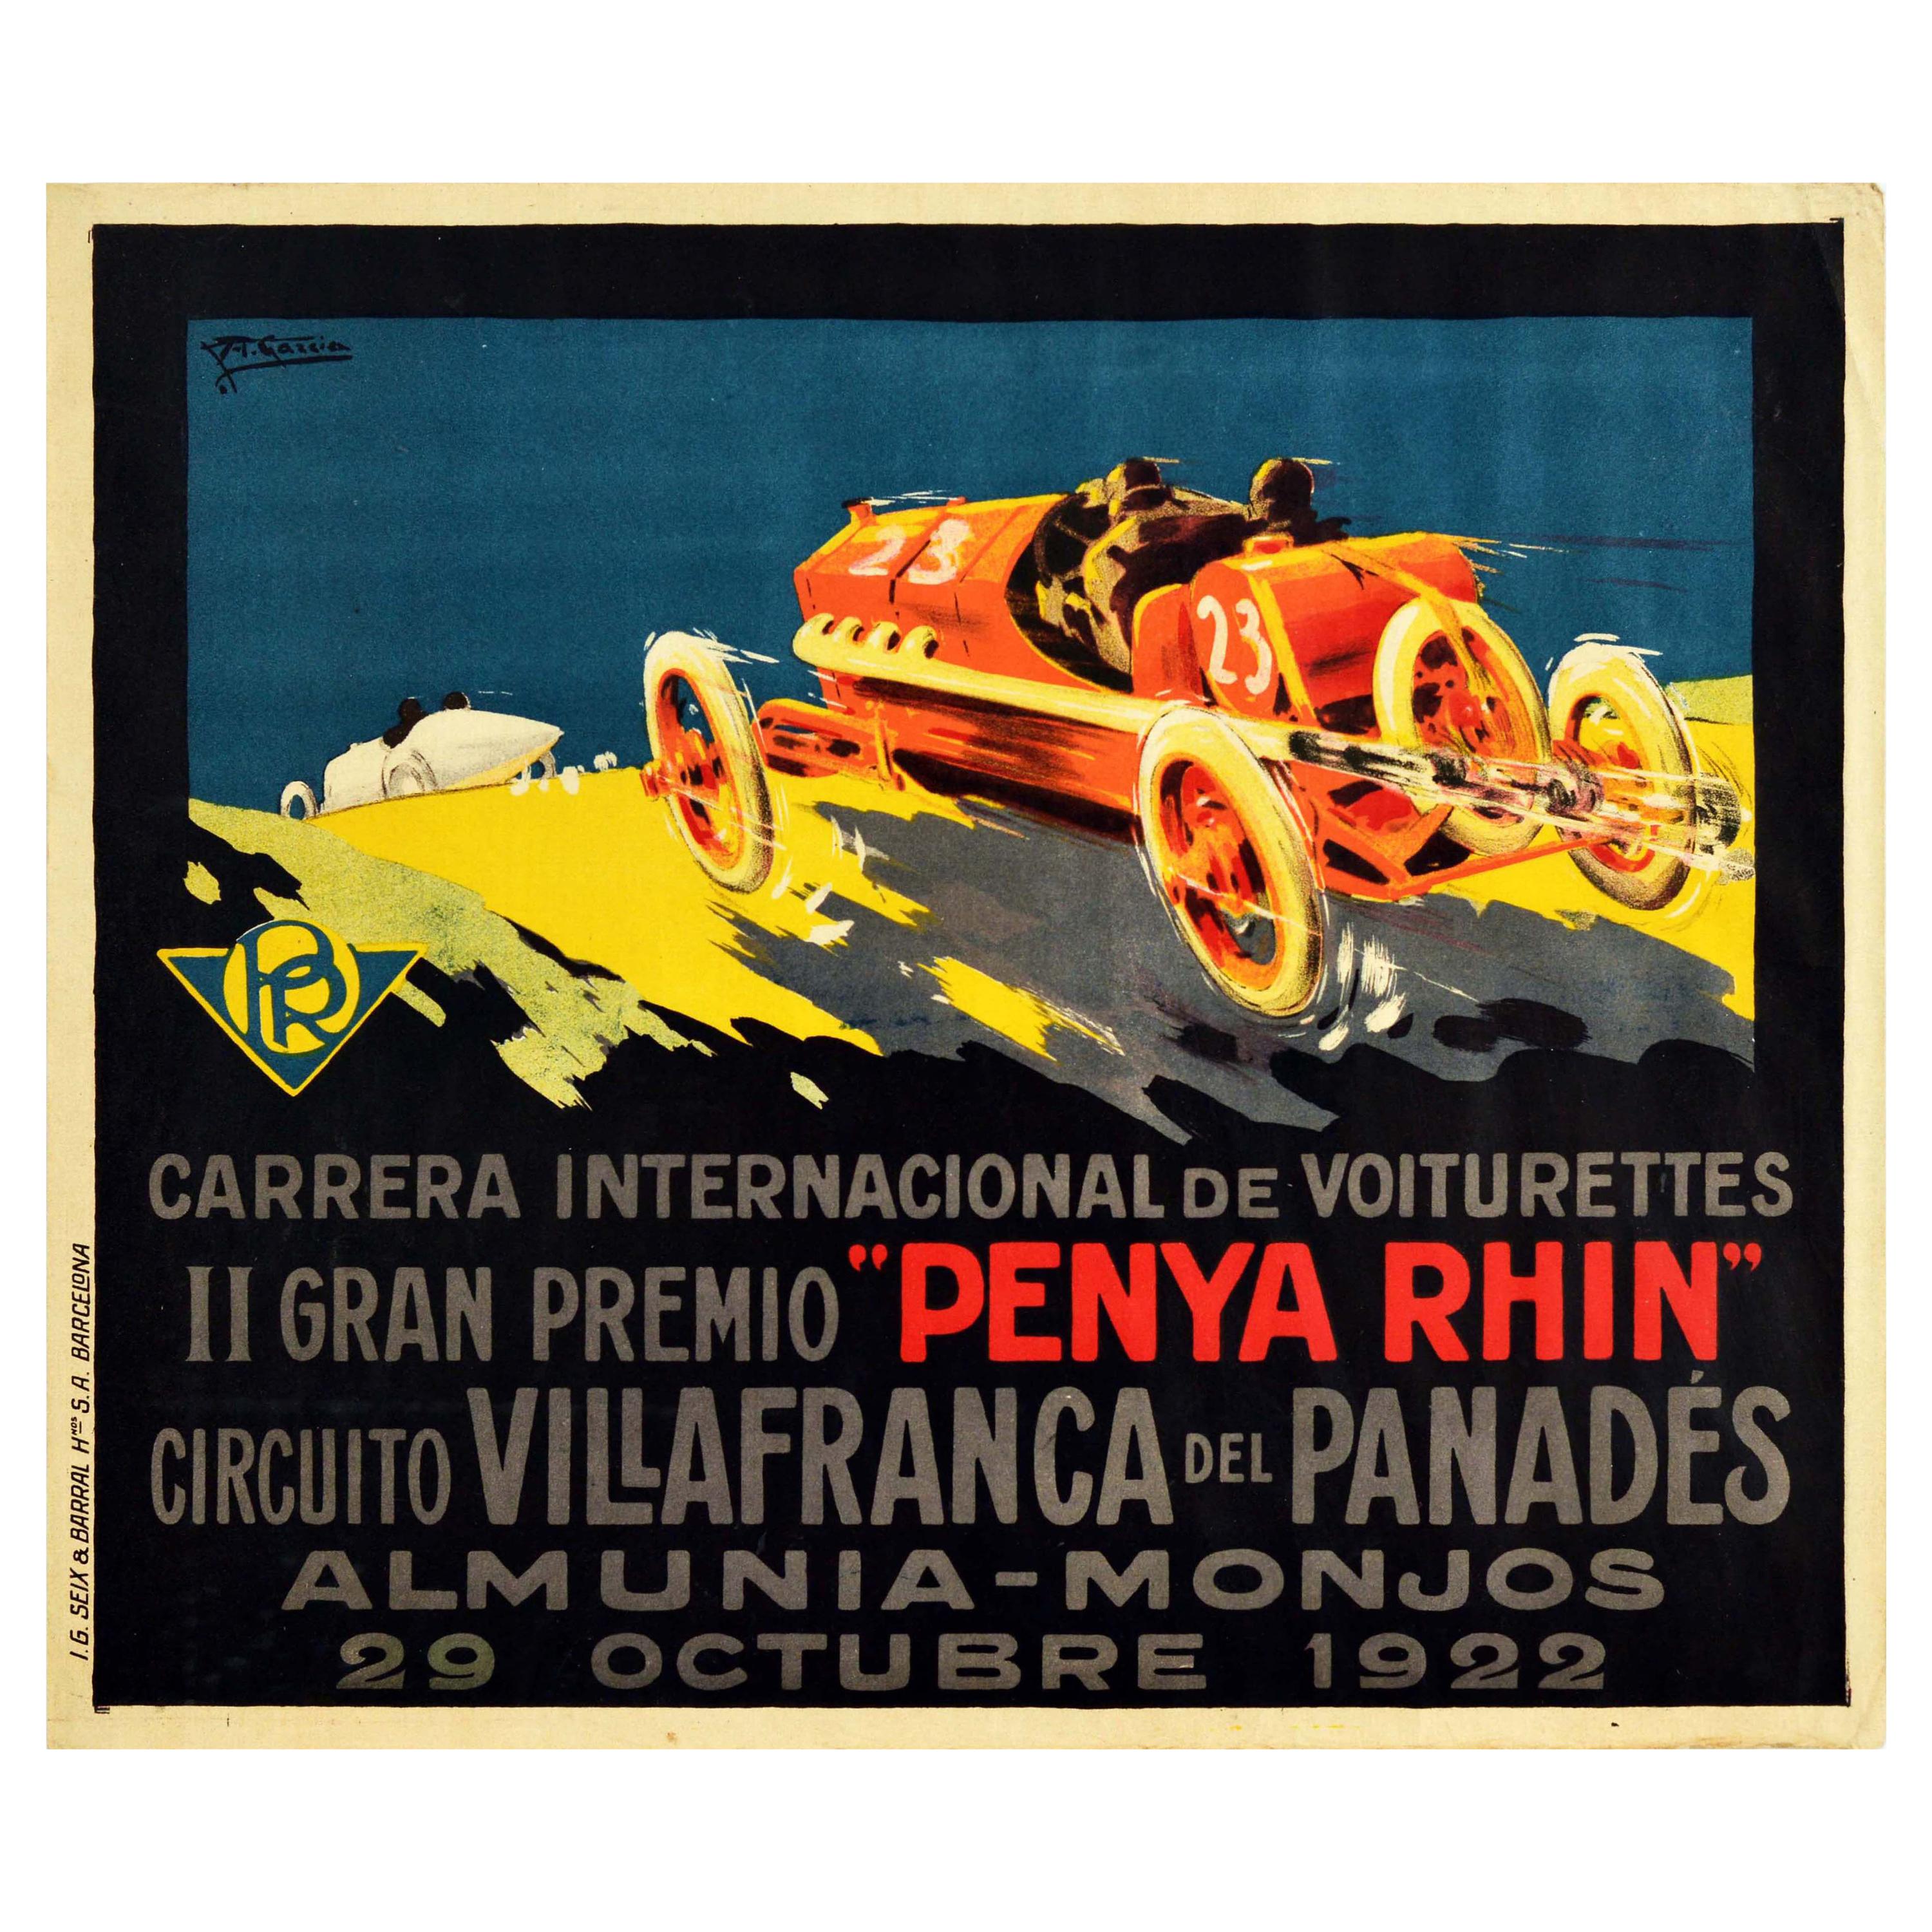 Original Vintage Motor Sport Poster Gran Premio Penya Rhin Grand Prix Car Racing